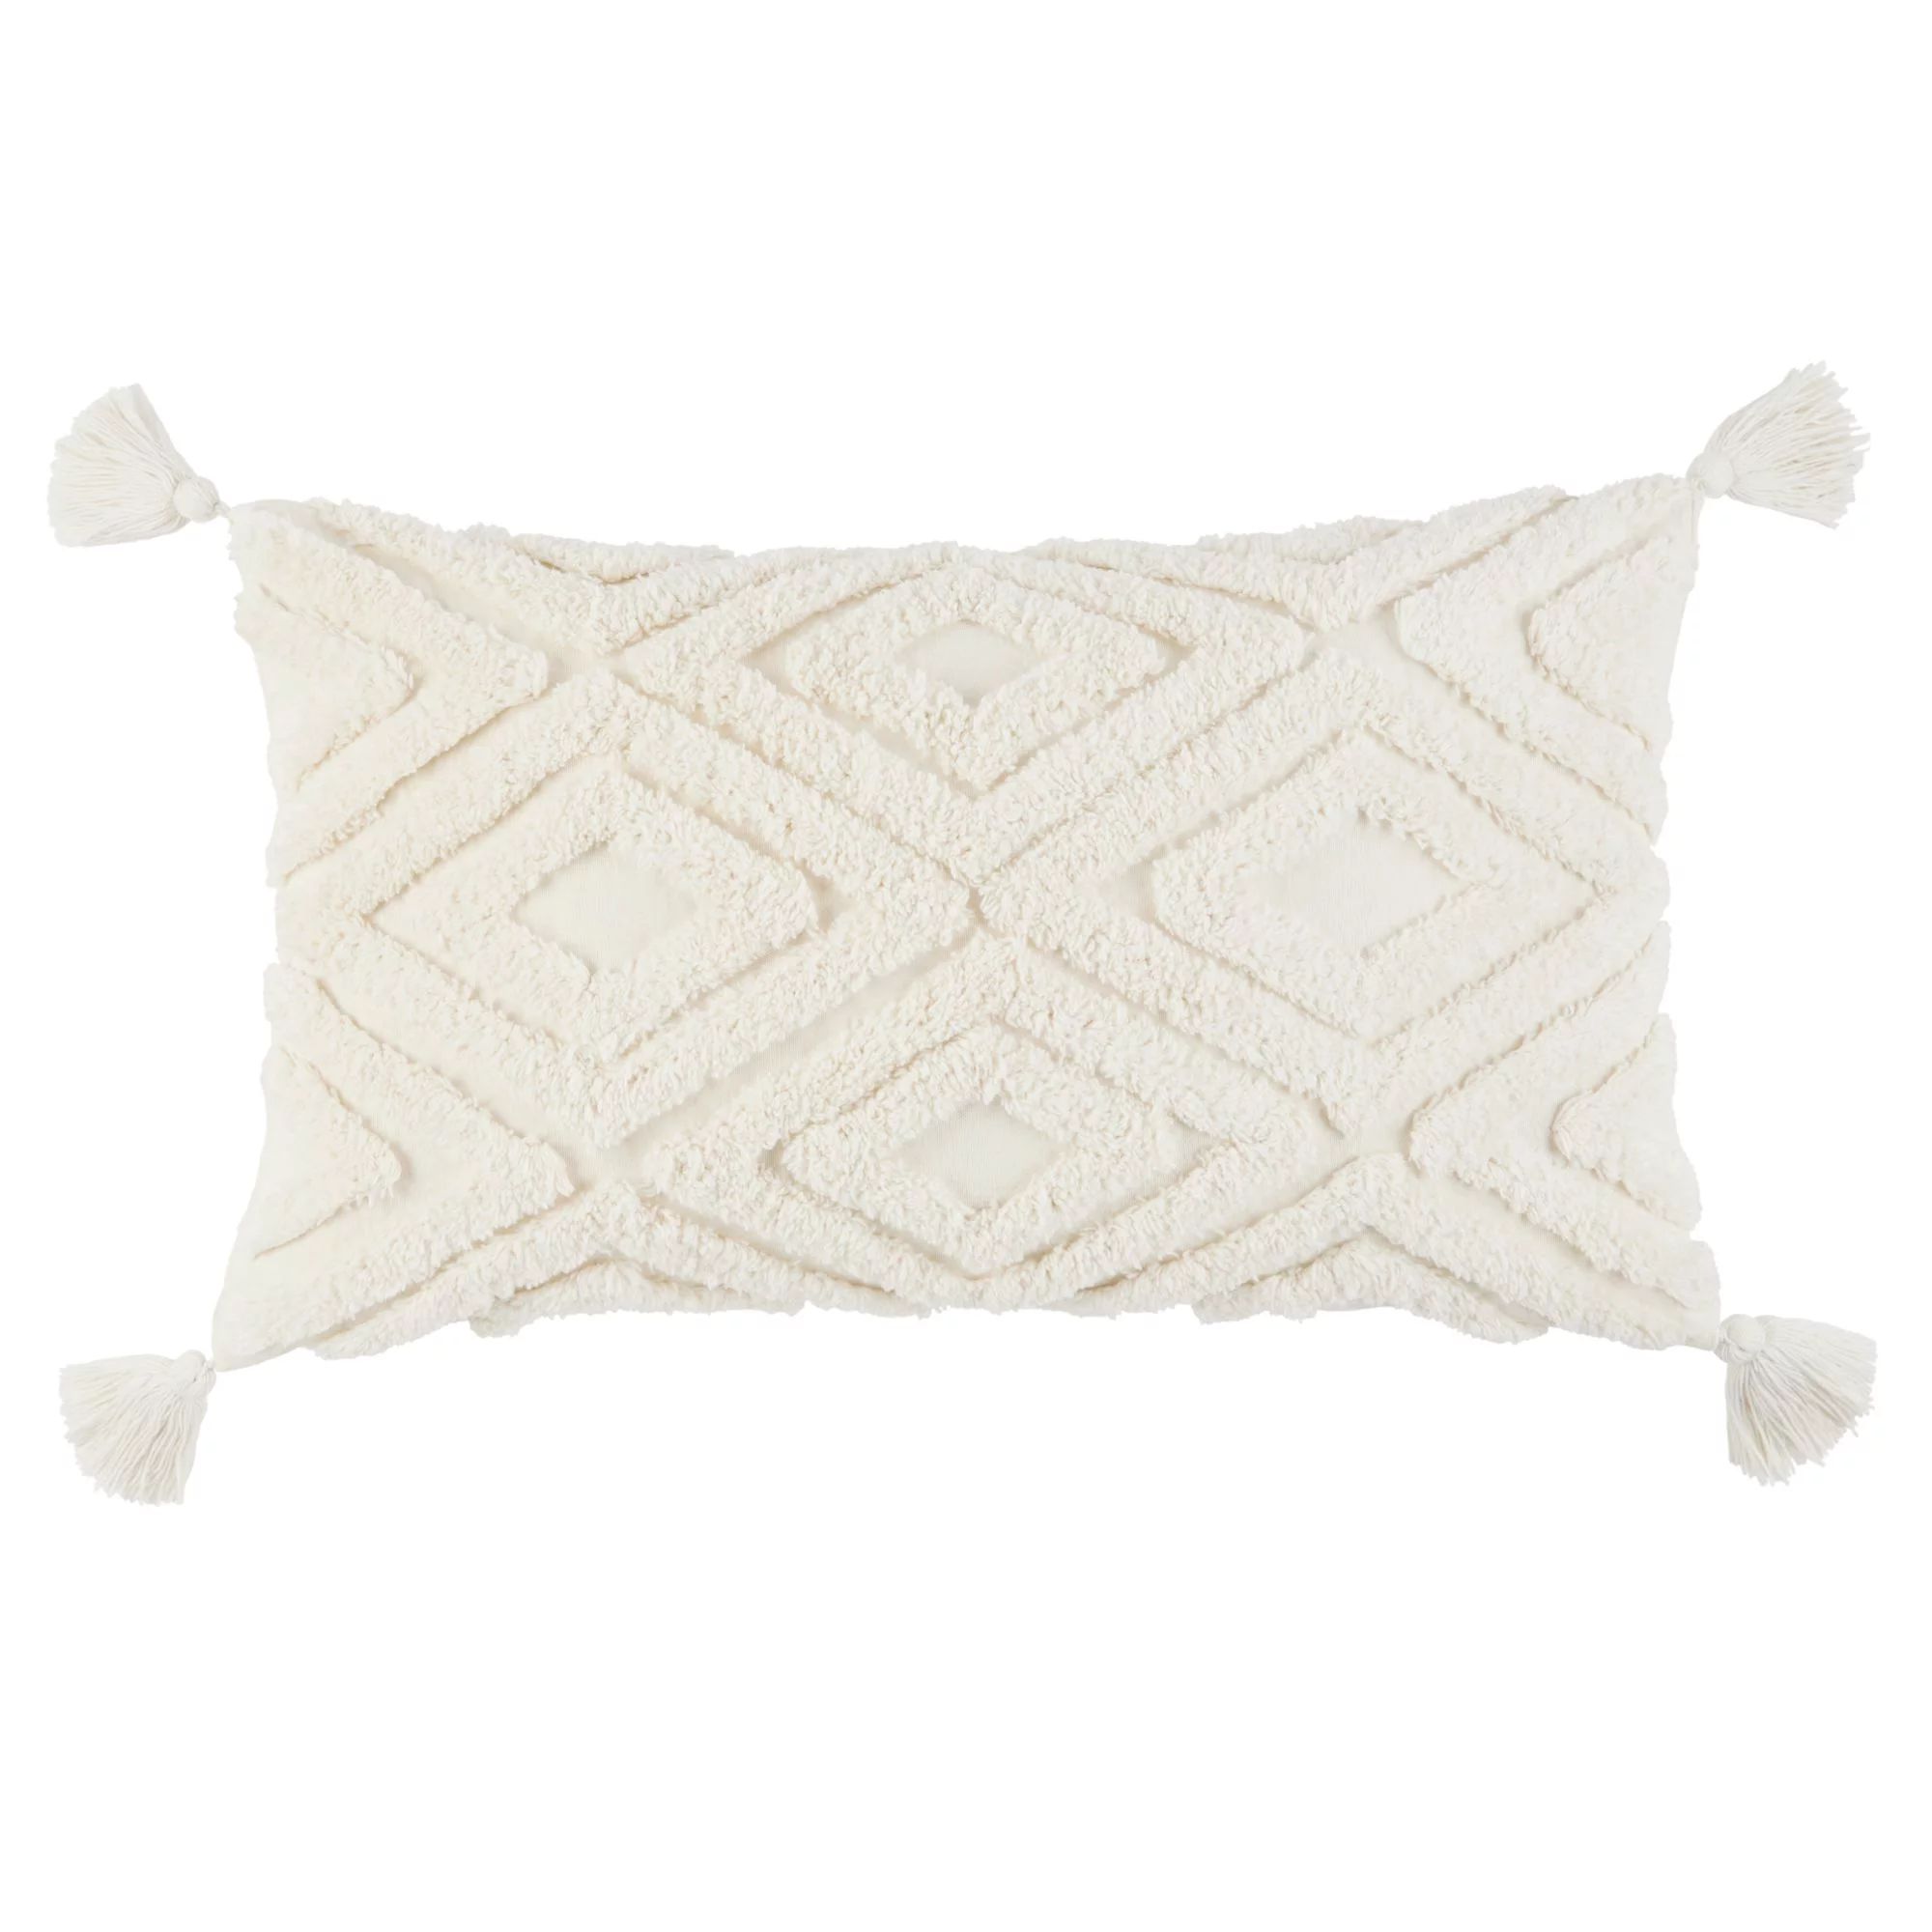 Wanda June Home Diamond Tufted Lumbar Pillow, White, 14"x24" by Miranda Lambert | Walmart (US)